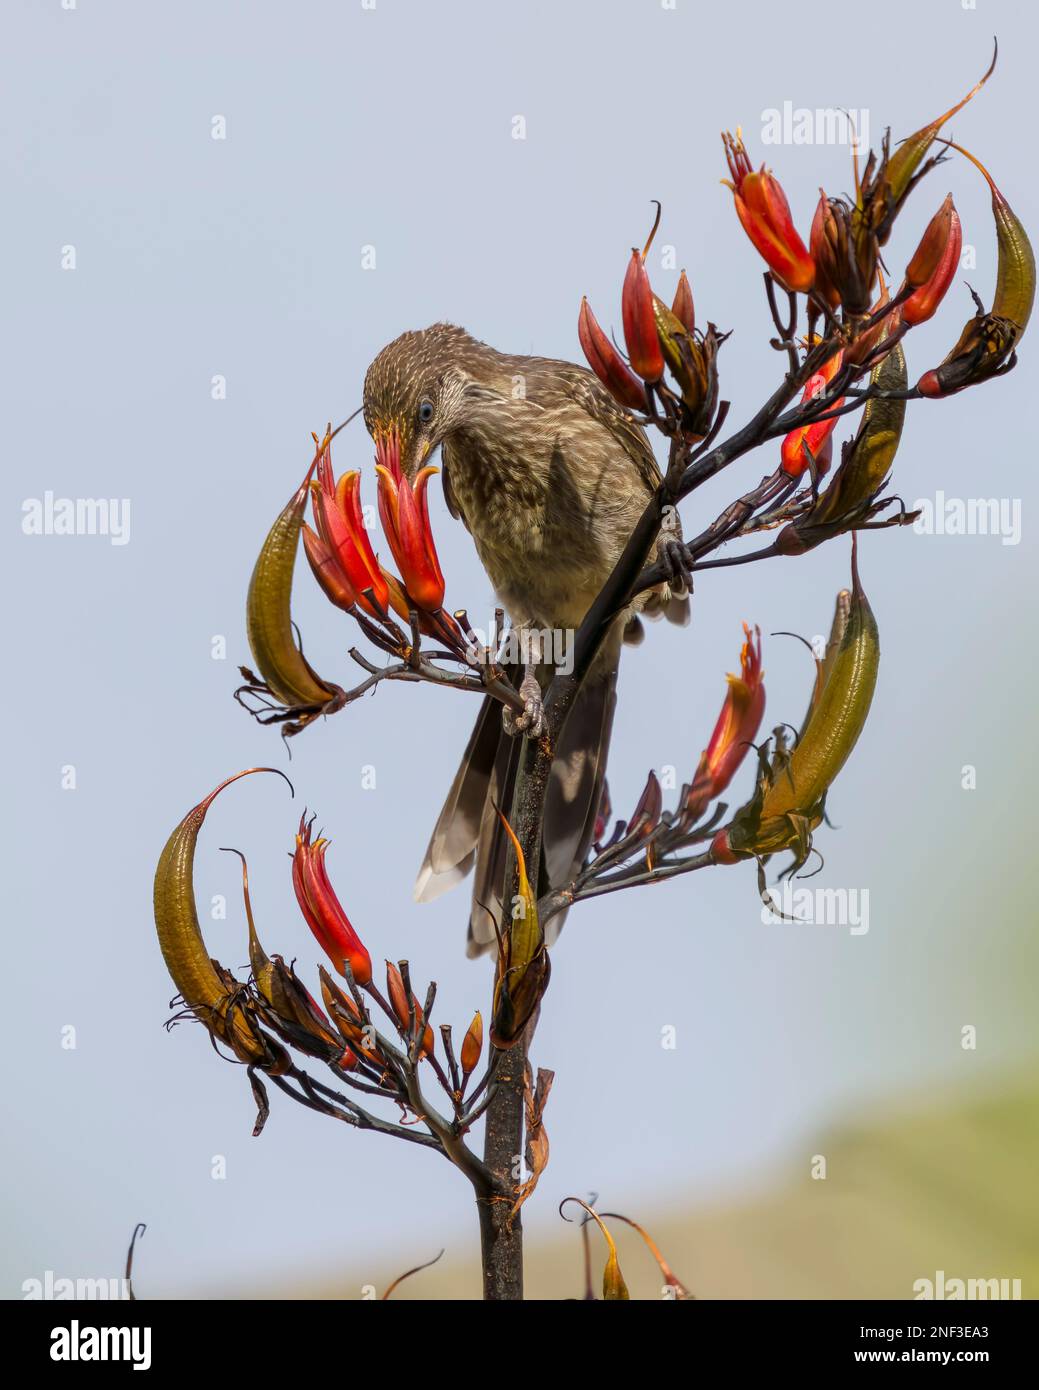 Un petit oiseau de puissance se nourrissant sur le nectar de fleur de lin de harakeke rouge lors d'une journée ensoleillée avec un arrière-plan flou Banque D'Images